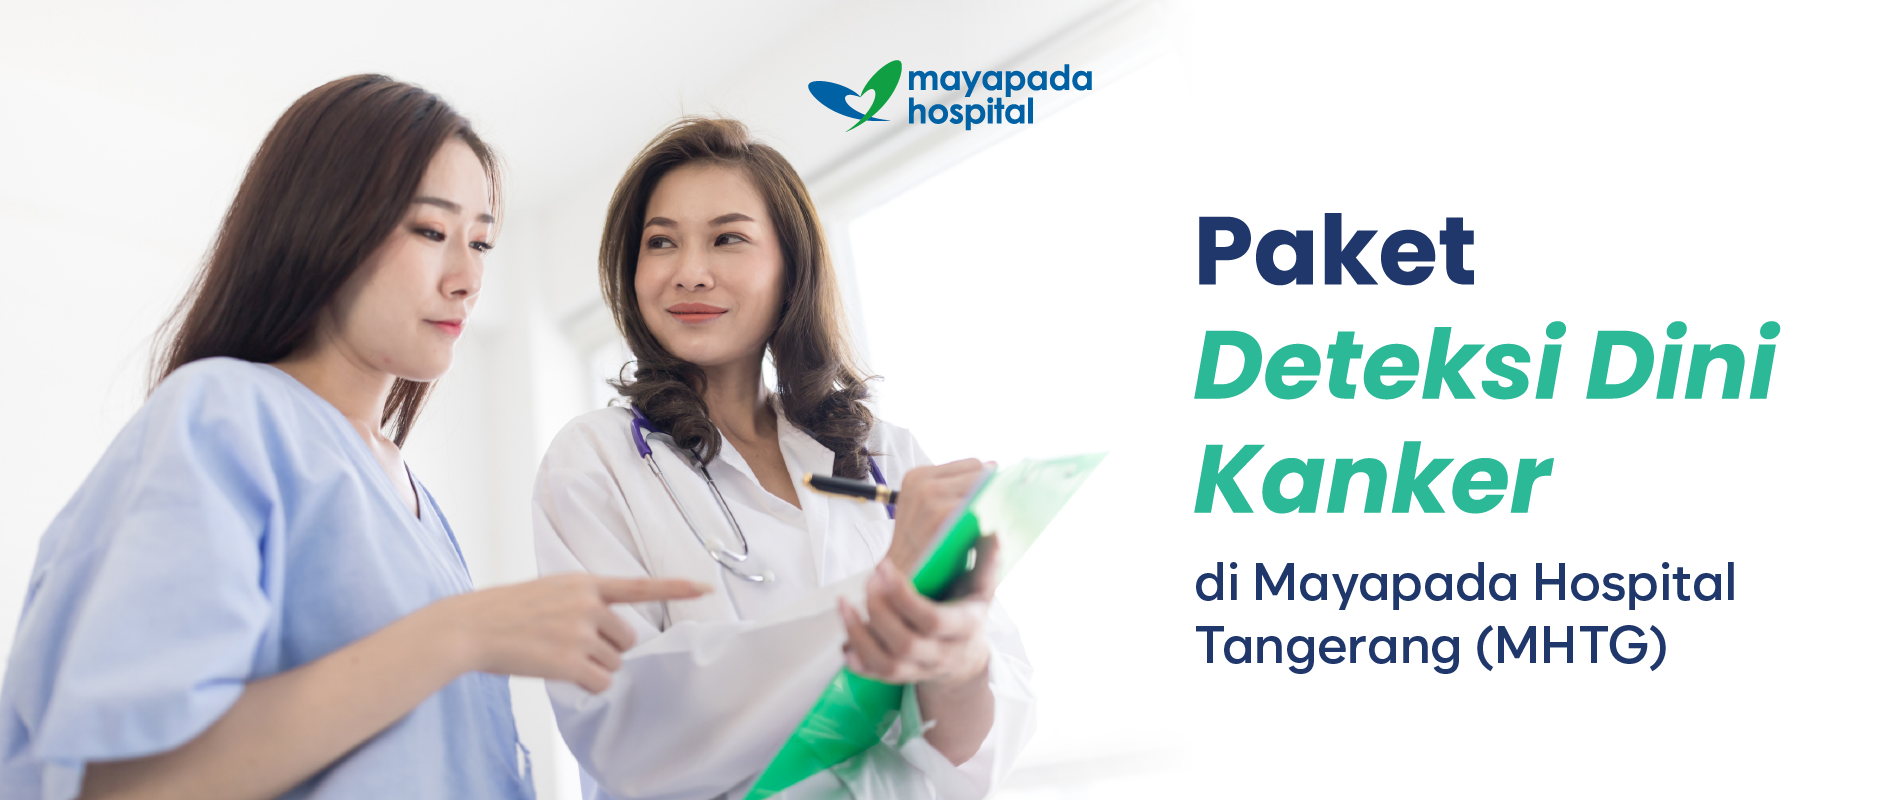 Paket Deteksi Dini Kanker di Mayapada Hospital Tangerang (MHTG) IMG